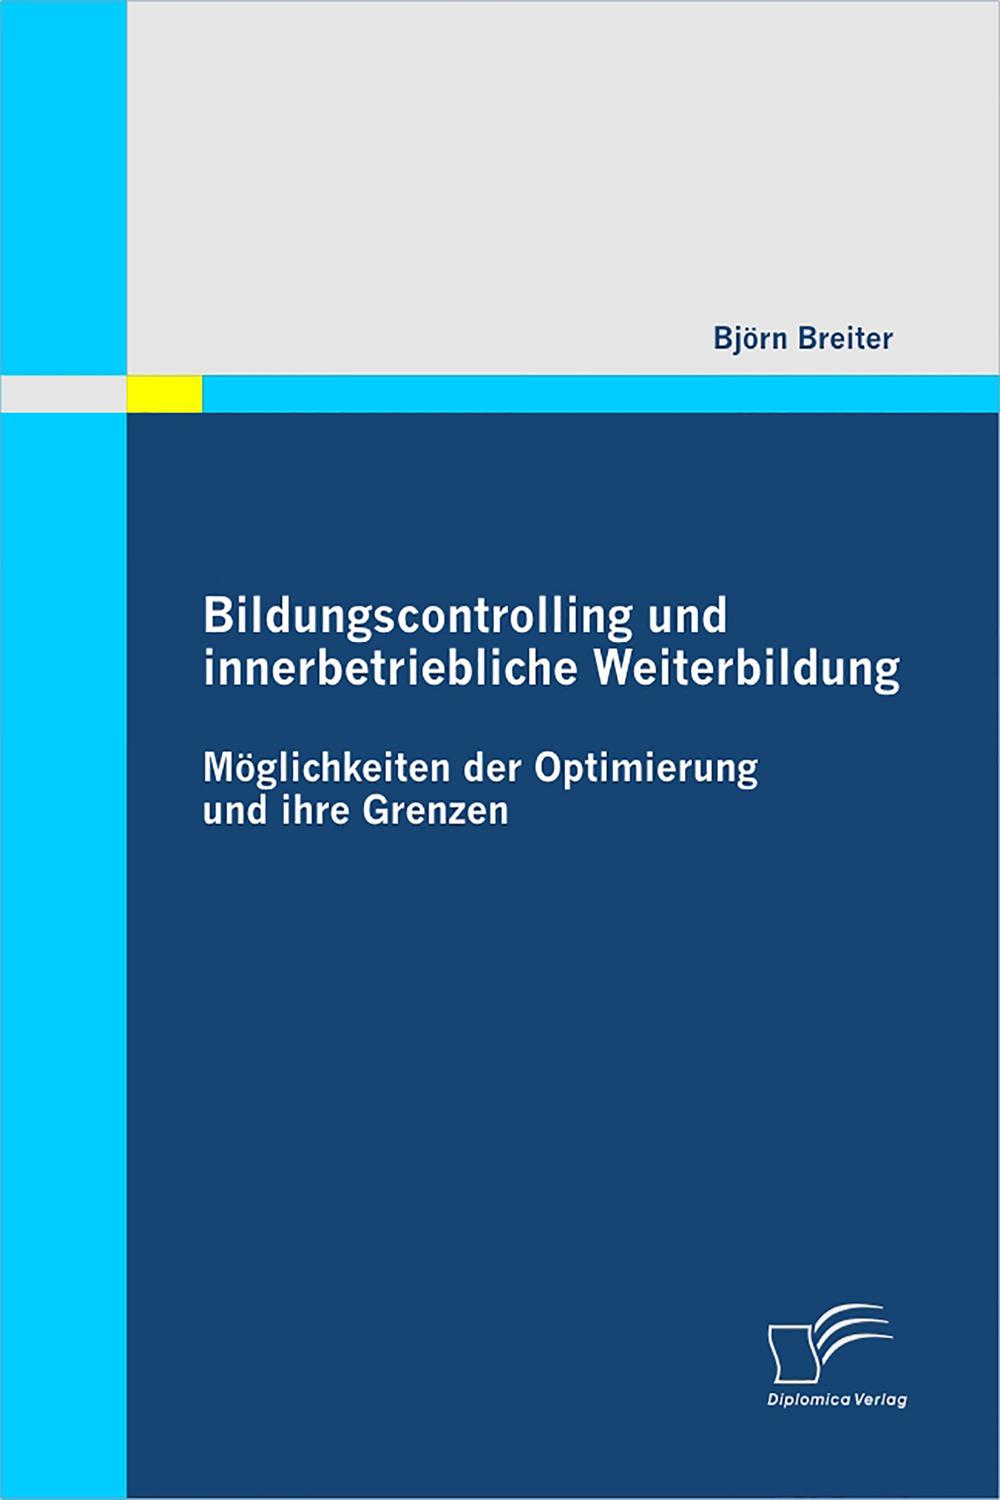 Bildungscontrolling und innerbetriebliche Weiterbildung - Björn Breiter